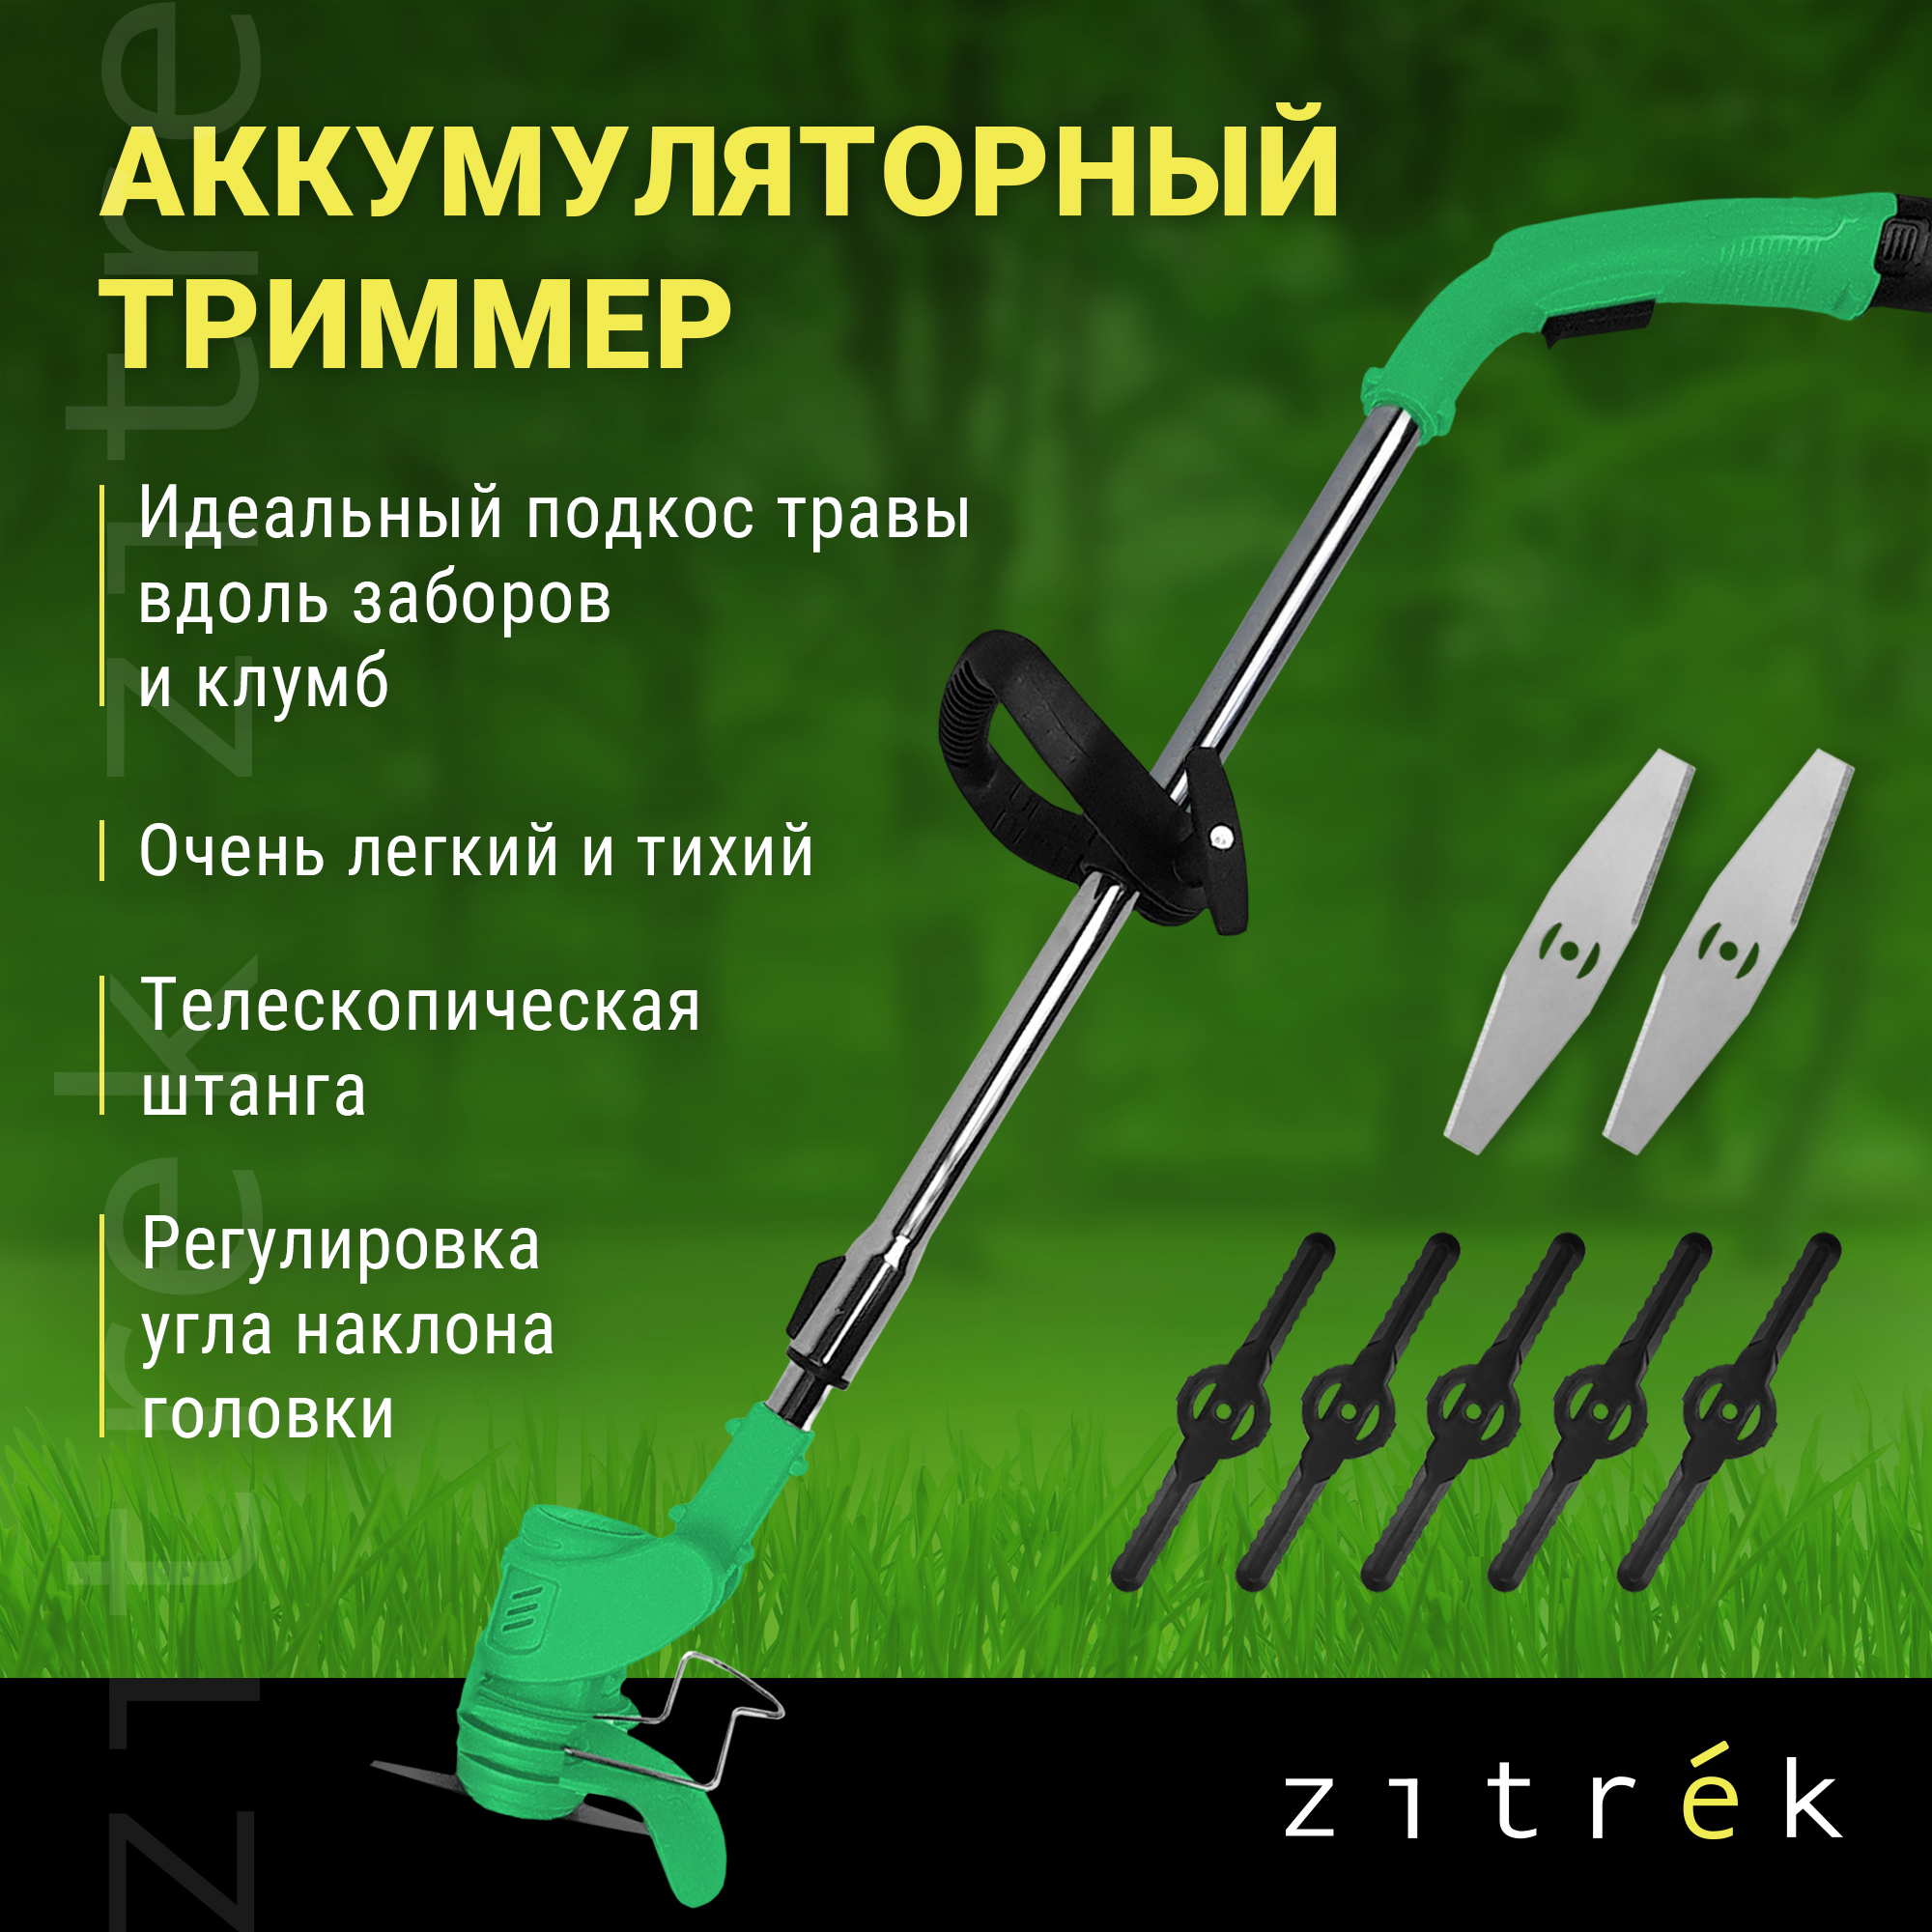 Аккумуляторный садовый триммер Zitrek GreenCut 12 082-2000 12 В АКБ и ЗУ в комплекте - купить в Москве, цены на Мегамаркет | 600003555394